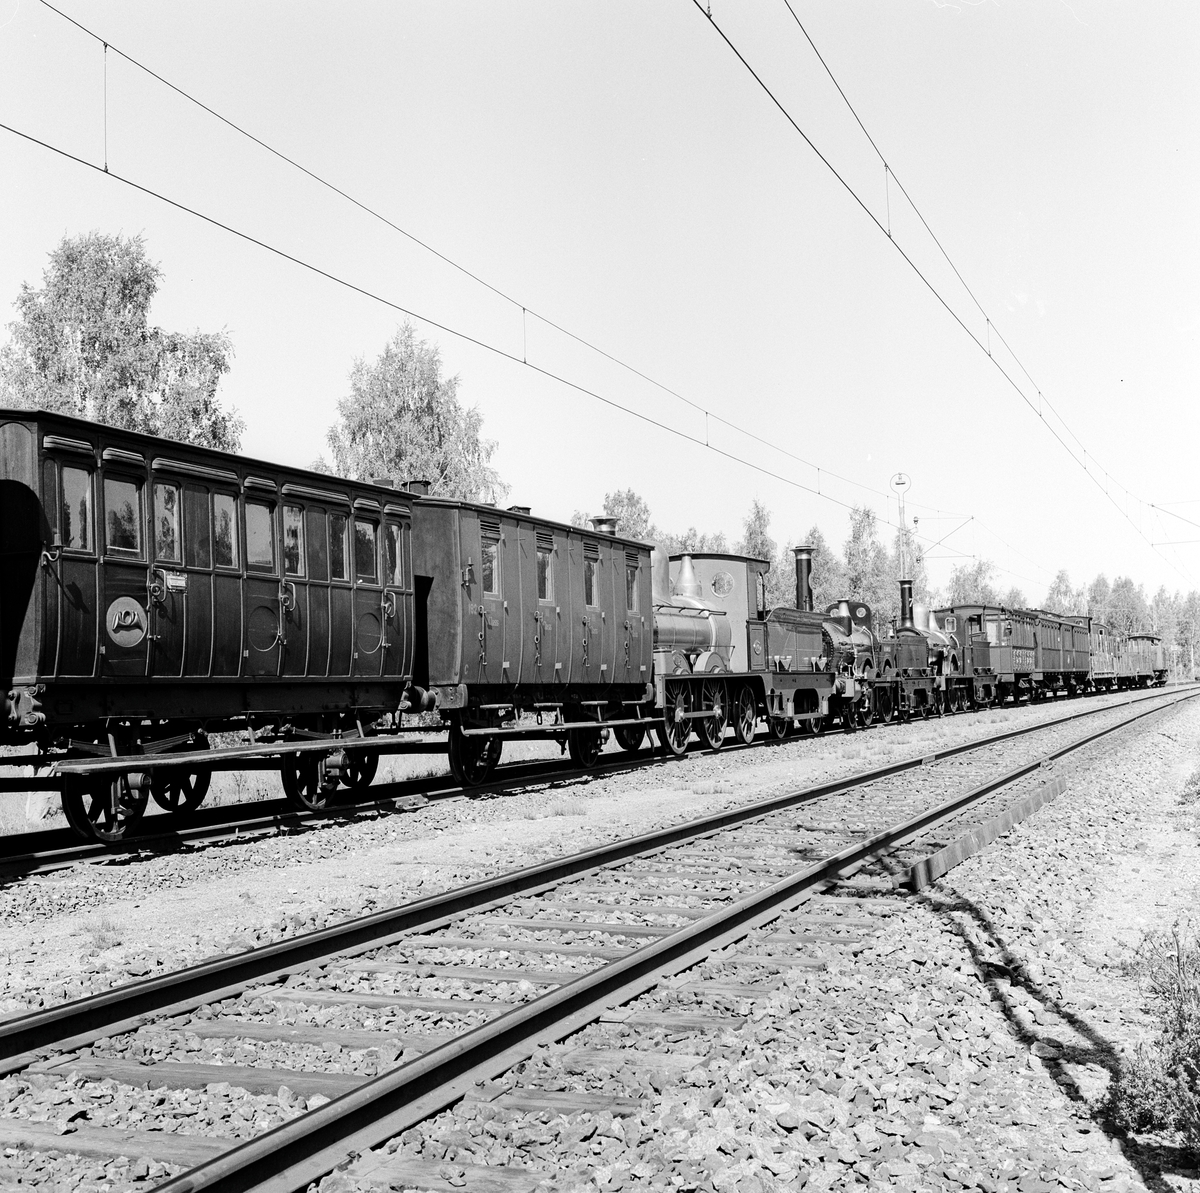 Tredjeklass personvagn, sittvagn, SJ C nr 182 av Statens Järnvägars andra typ. Vagnskorg av trä målad i rödbrun kulör med gul märkning. 
En helt öppen avdelning med soffor uppställda motstående varandra på kupévis, var och en avsedd för fem resande. Varje soffpar har en egen ingång från sidan. Bagagehyllor av trä med järnkonsoler tillkomna efter 1872.
Vagnen uppvisar en karaktär som är mycket nära original. Buffertar, koppel, draginrättning och lagerboxar av 1874 års modell. Vagnen försågs med ett tunt lackskikt på 1950-talet, och märkningen gjordes om i originalutförande. Invändigt har sofforna sannolikt målats om, varför tonen är något mörk.